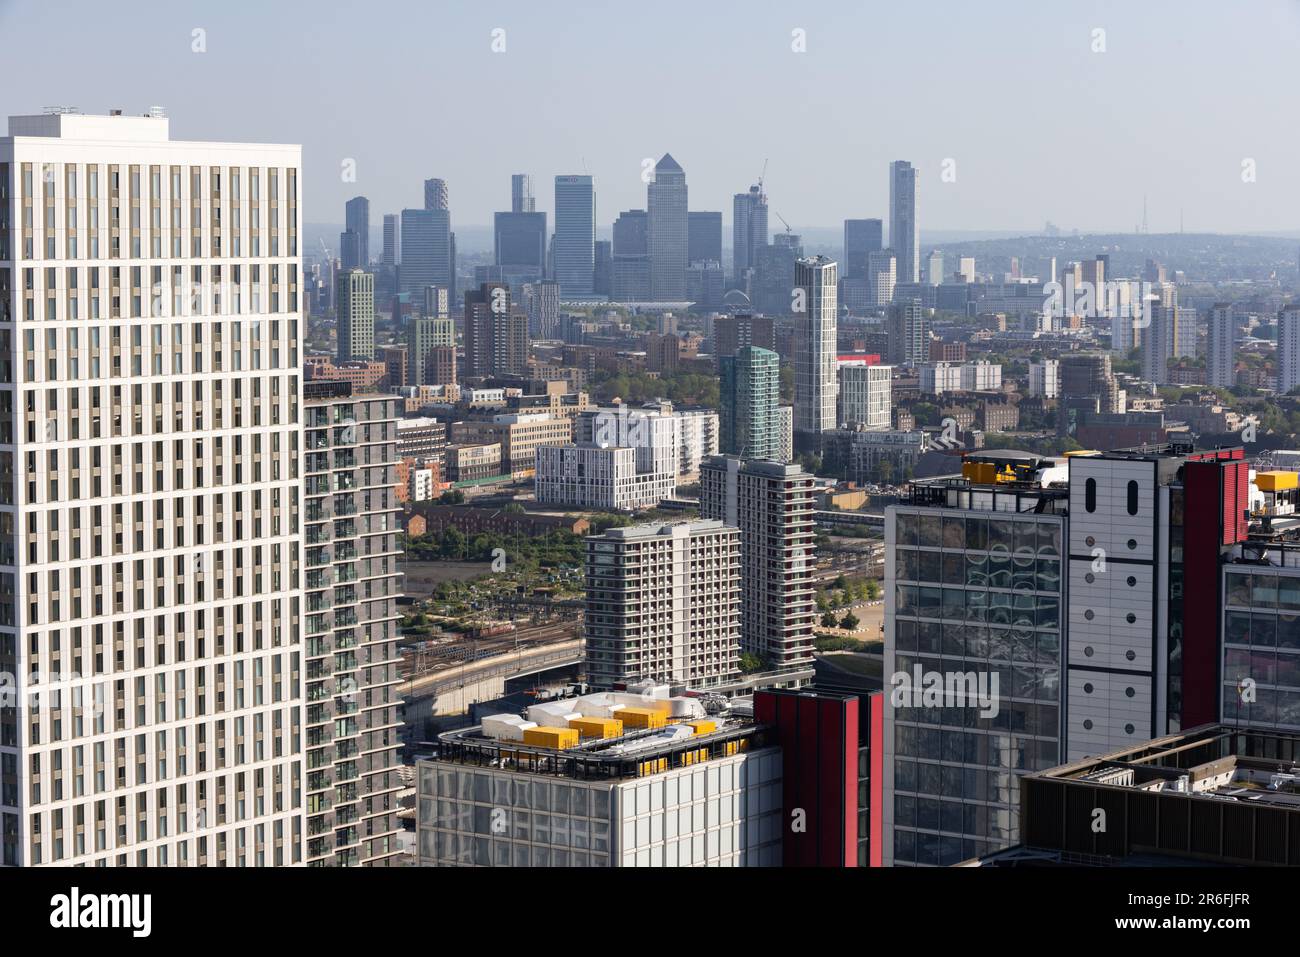 Canary Wharf Skyline, quartier financier de la région des docklands de l'est de Londres sur une chaude journée d'été vue d'un bâtiment de haute élévation à Stratford, Londres. Banque D'Images